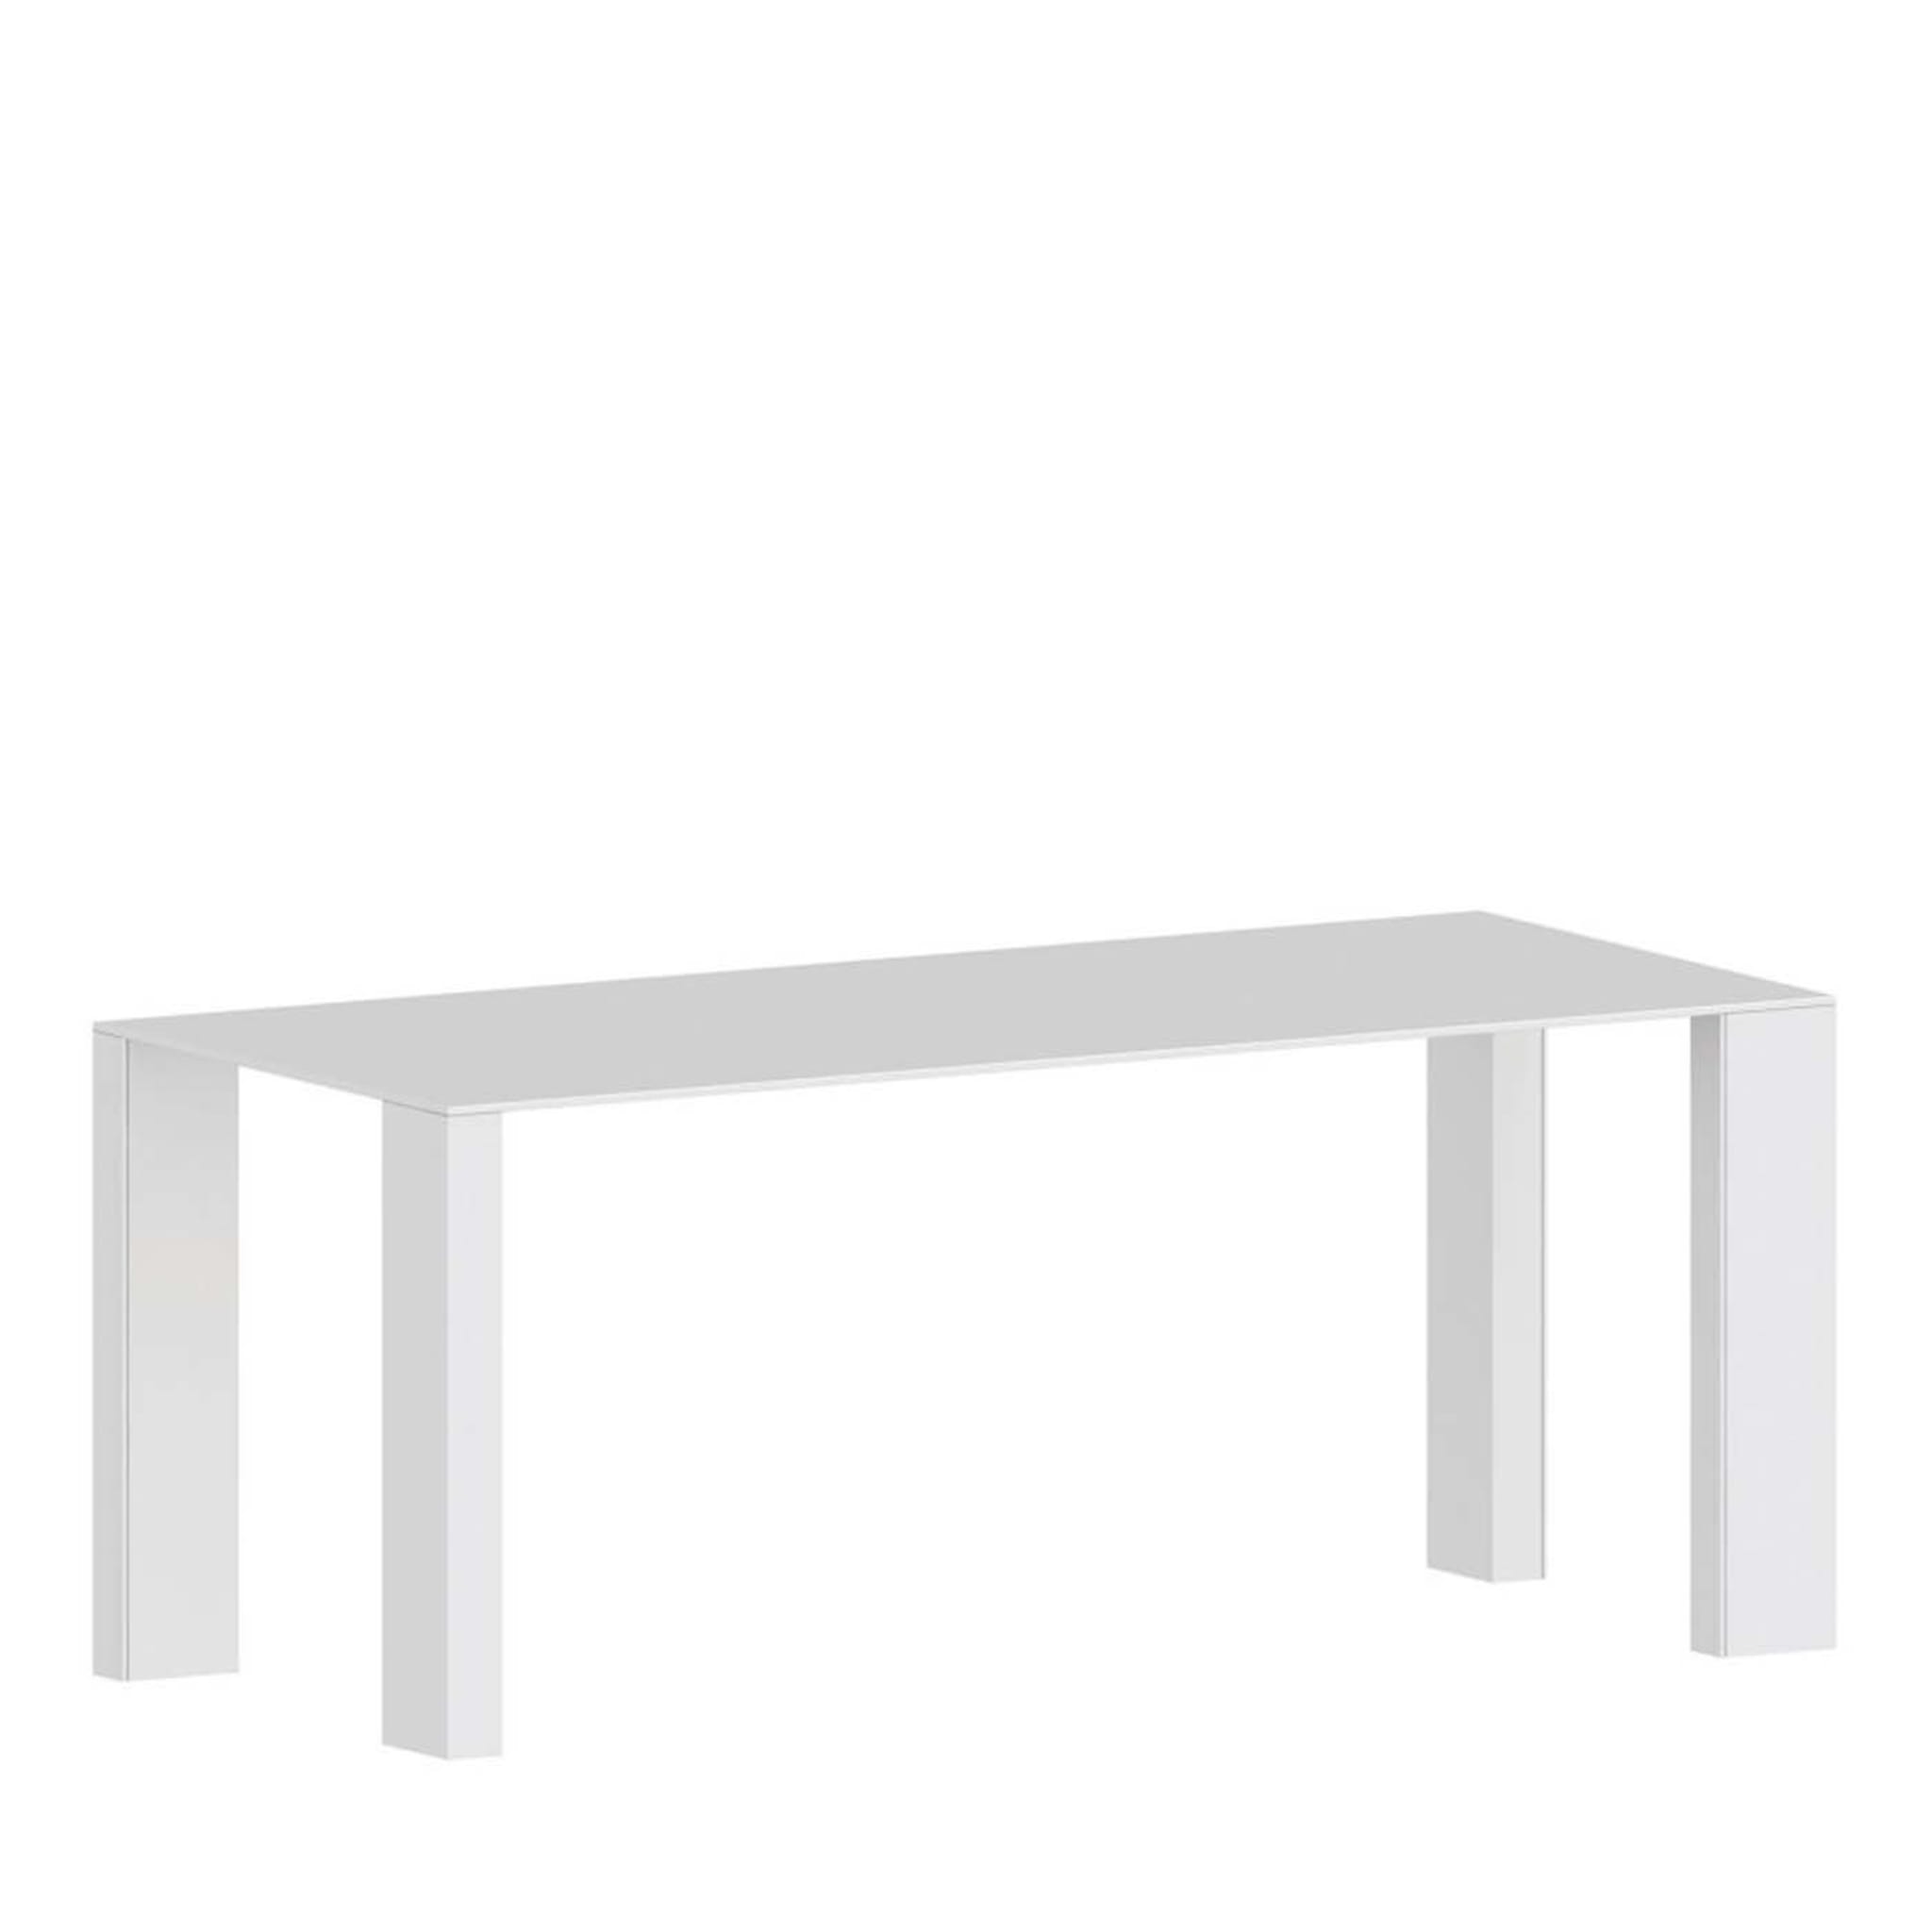 Big Gim White Table by Franco Raggi - Main view